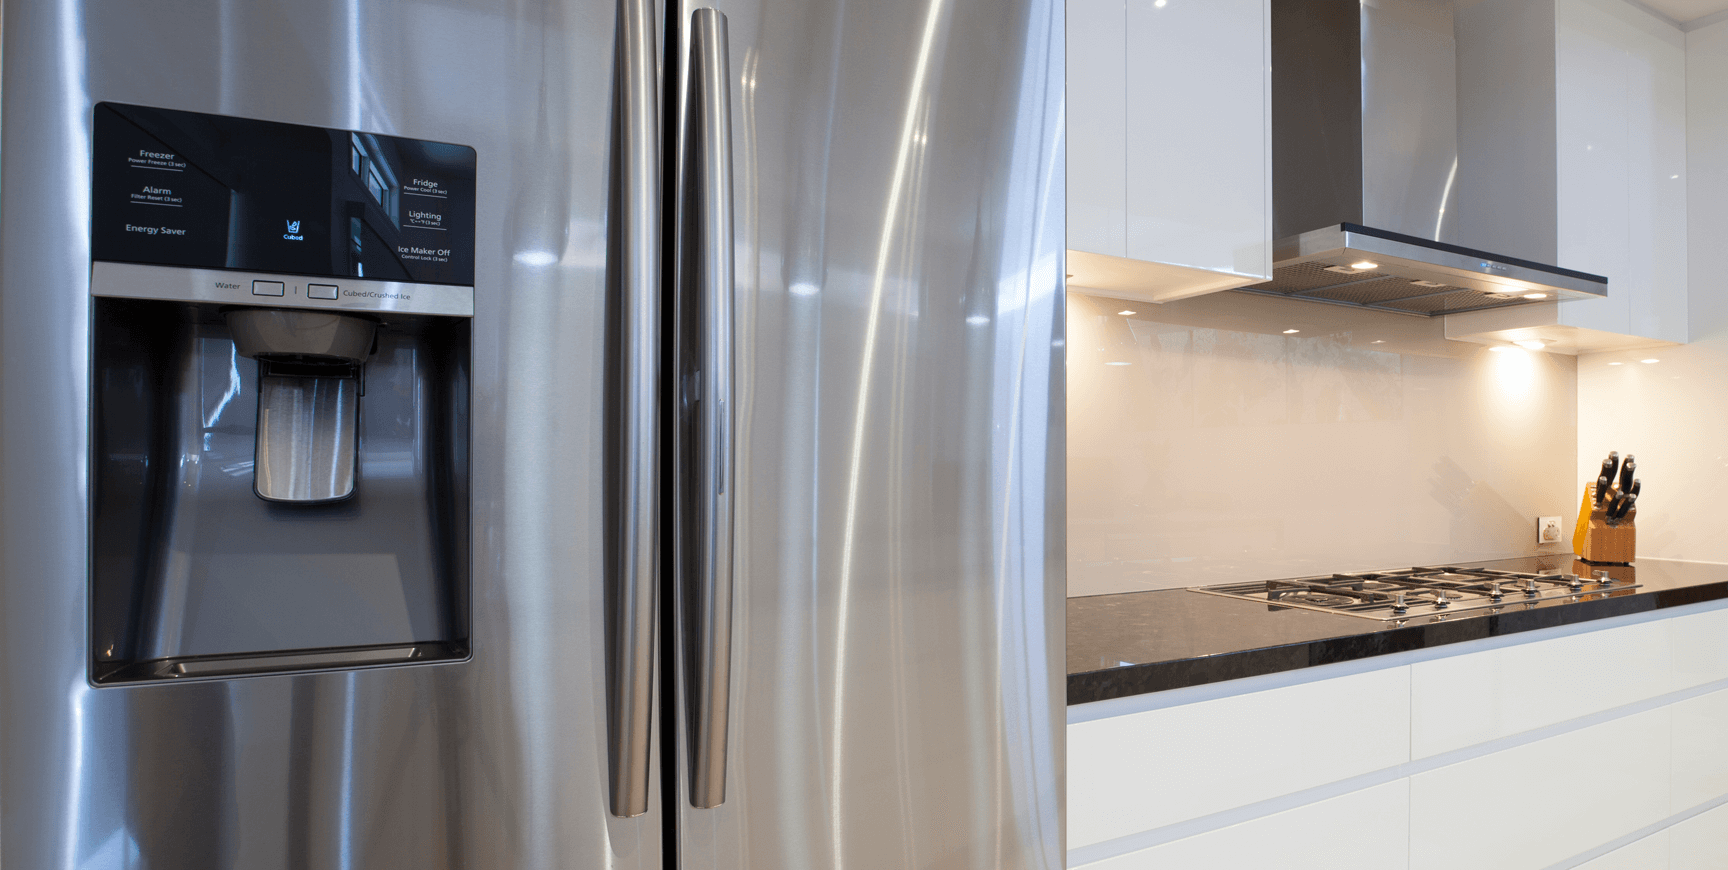 Refrigerator in Modern Kitchen